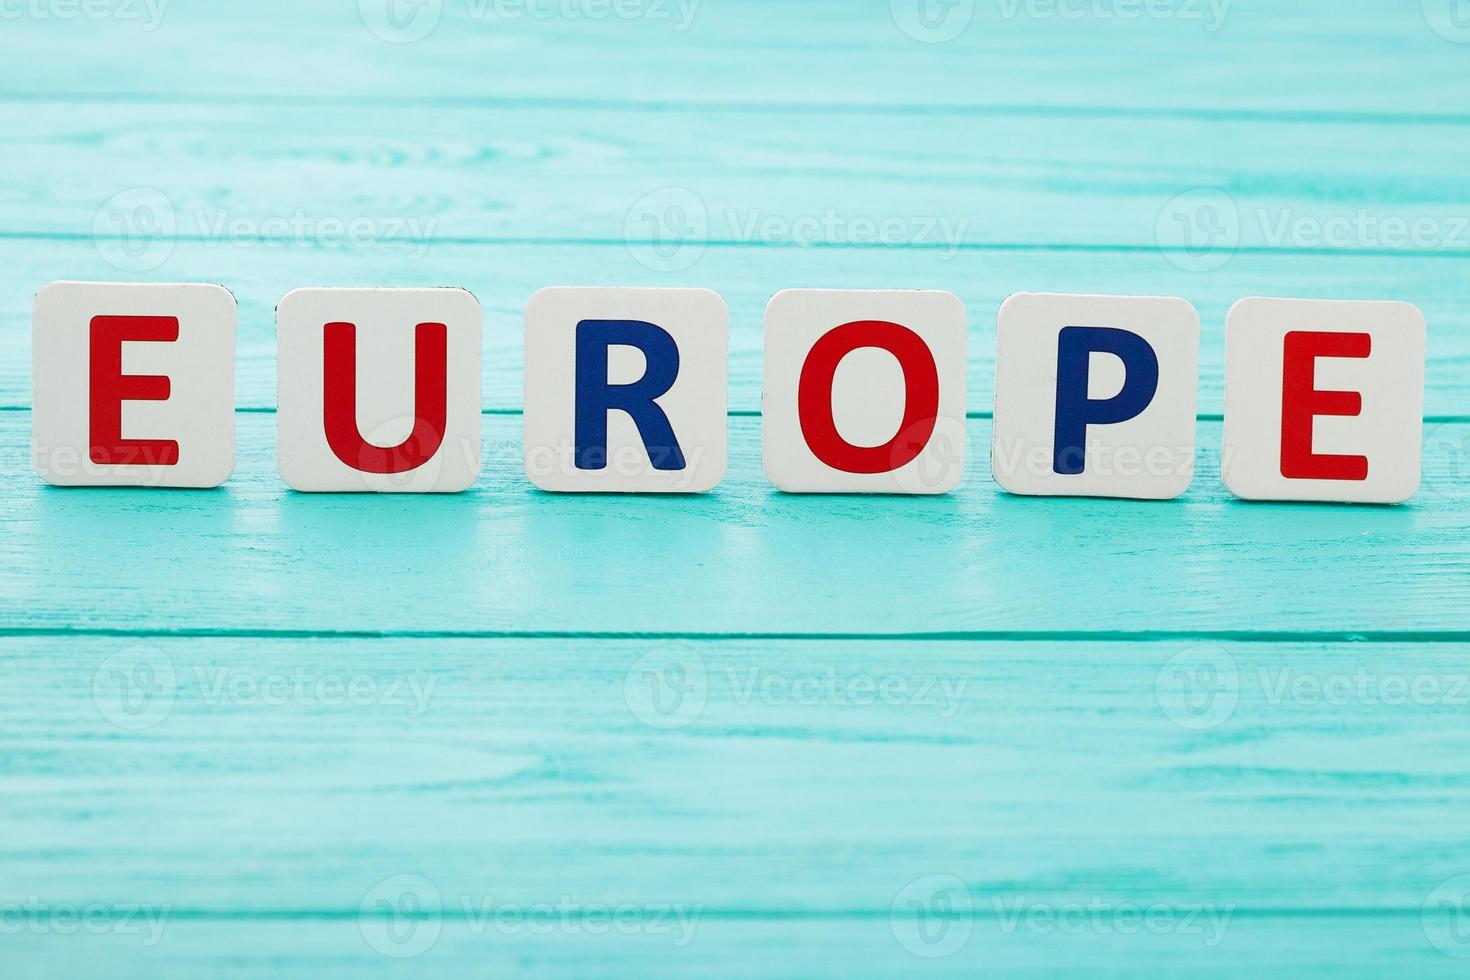 palavra europa sobre fundo azul de madeira. espaço de cópia e foco seletivo foto